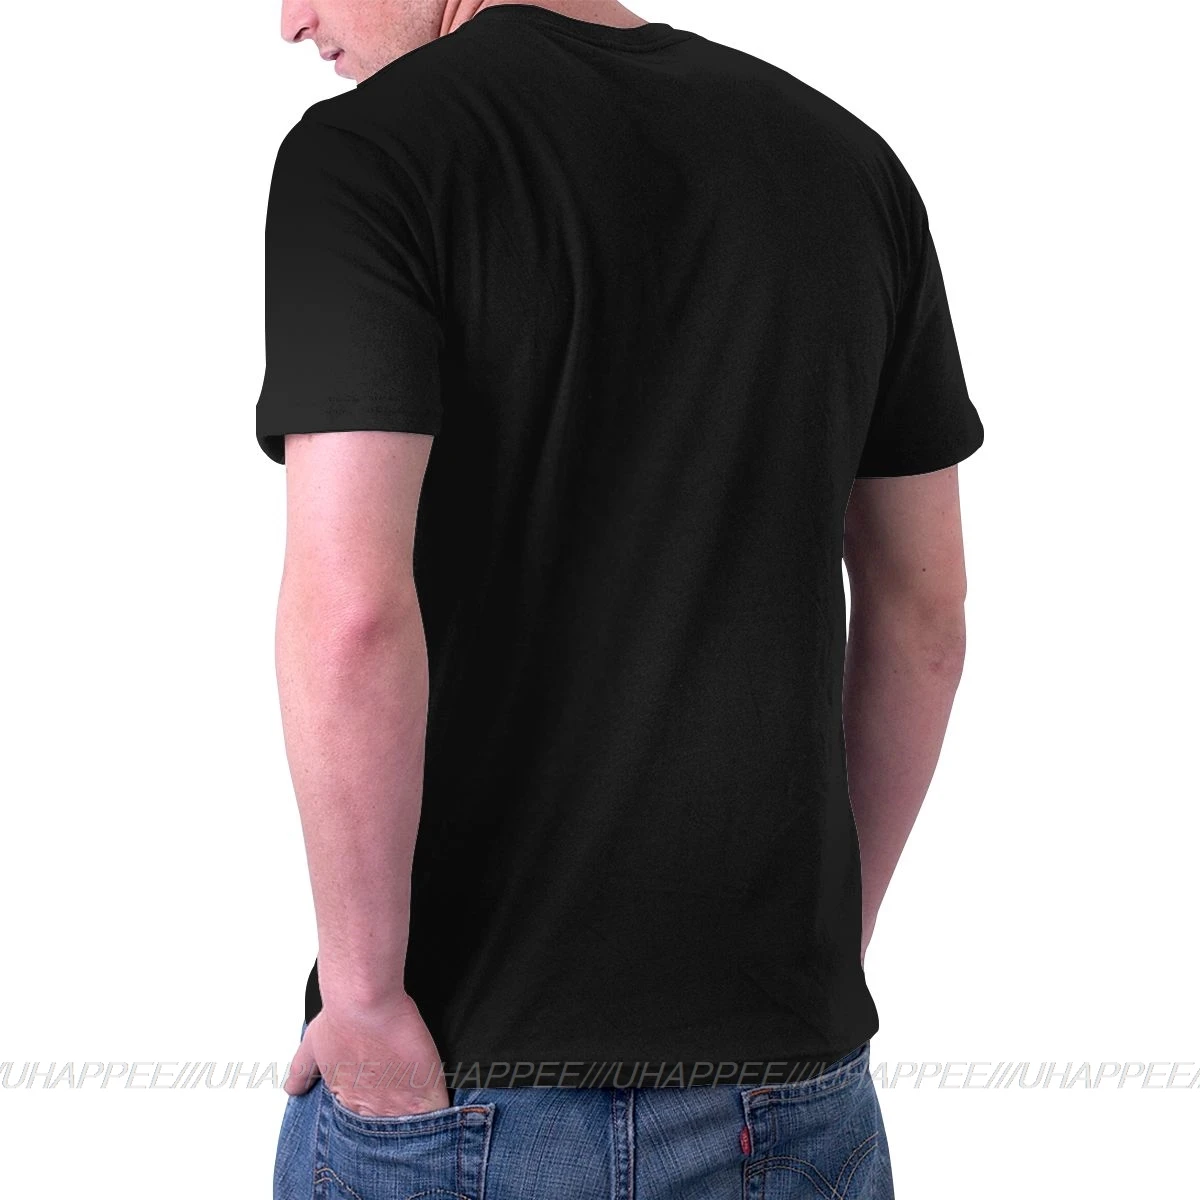 Dogecoin криптовалютная печать футболка большого размера мужские формальные